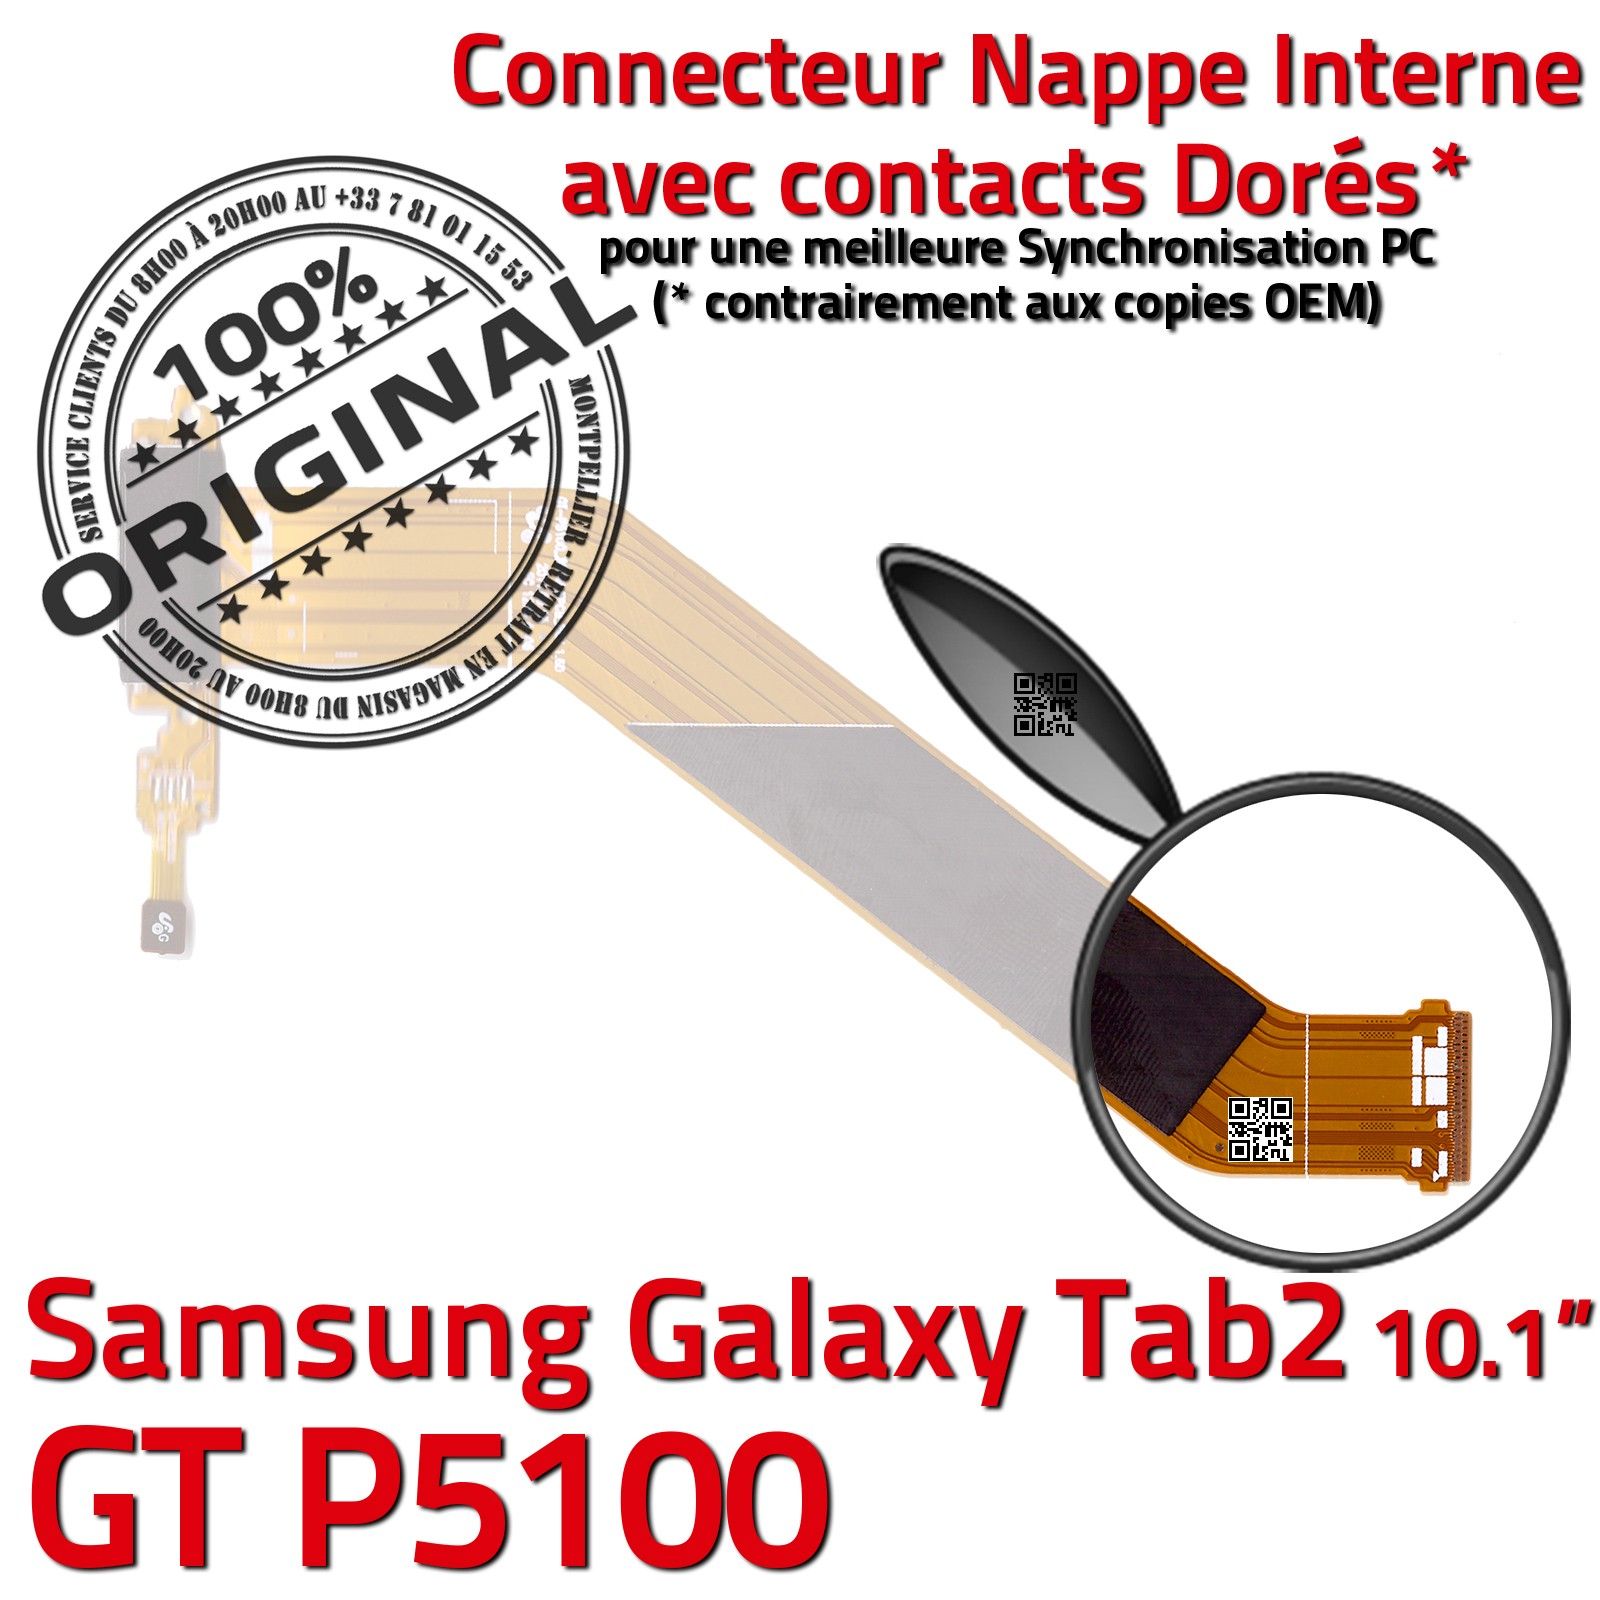 TAB 2 GT P5100 ORIGINAL Samsung Galaxy Connecteur de Charge Chargeur MicroUSB Nappe OFFICIELLE Qualité Contacts Dorés Réparation